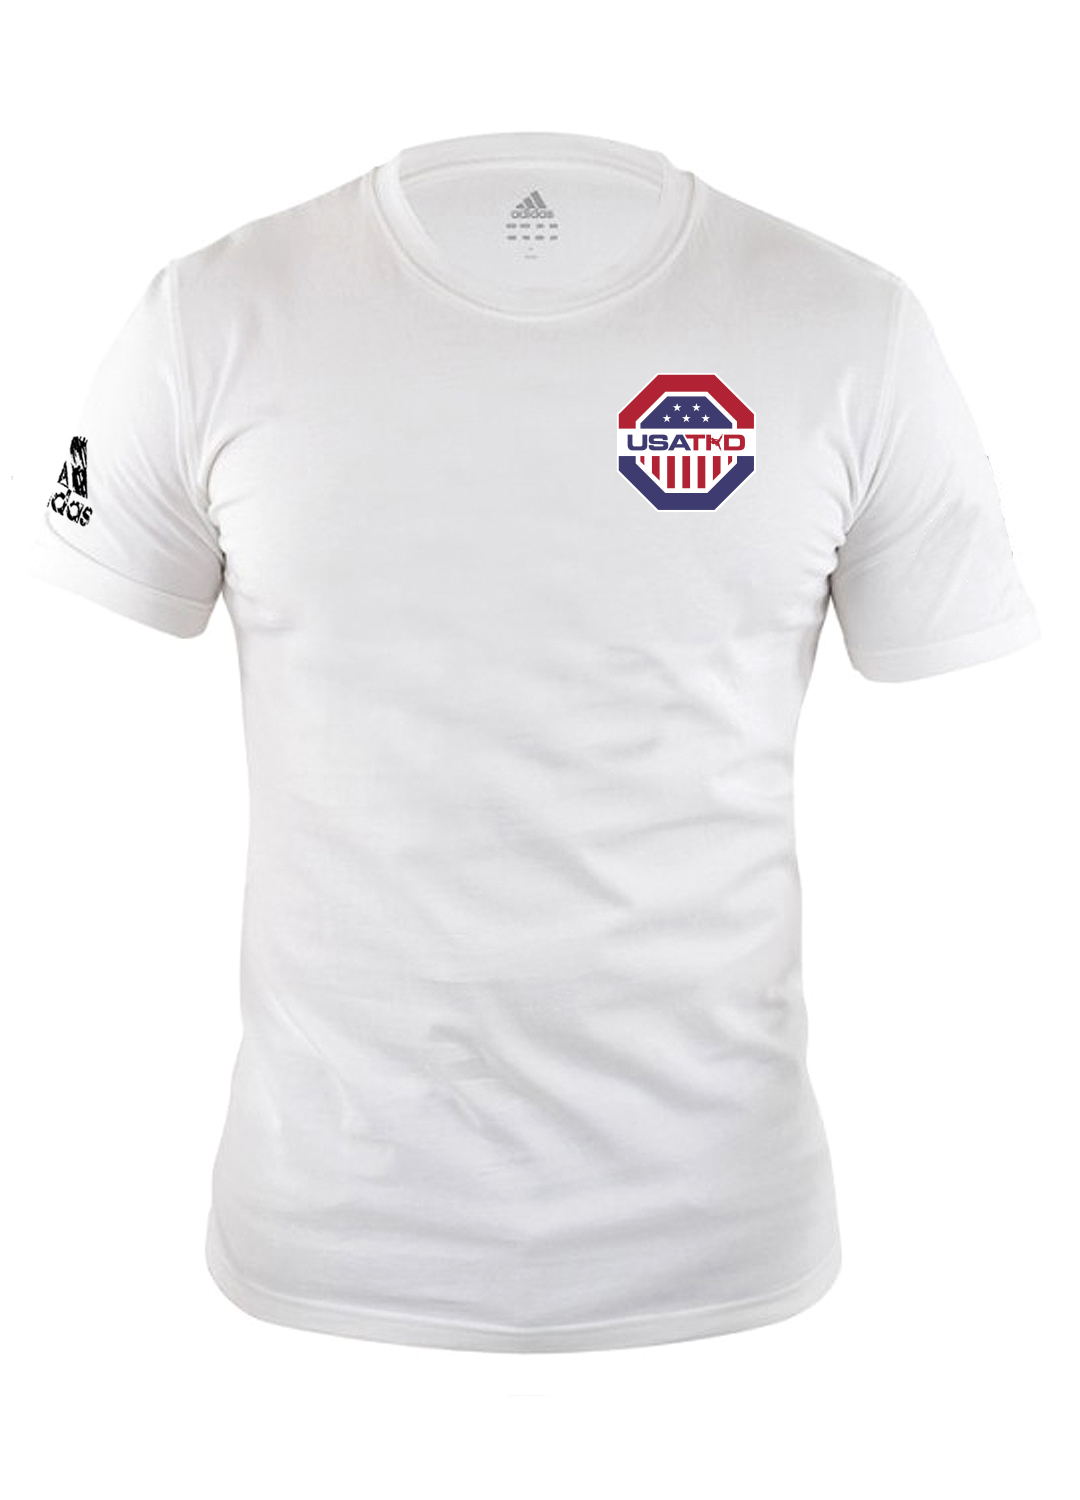 USAT adidas Combat Sports Premium Soft Cotton T-shirt, Athletic Fit